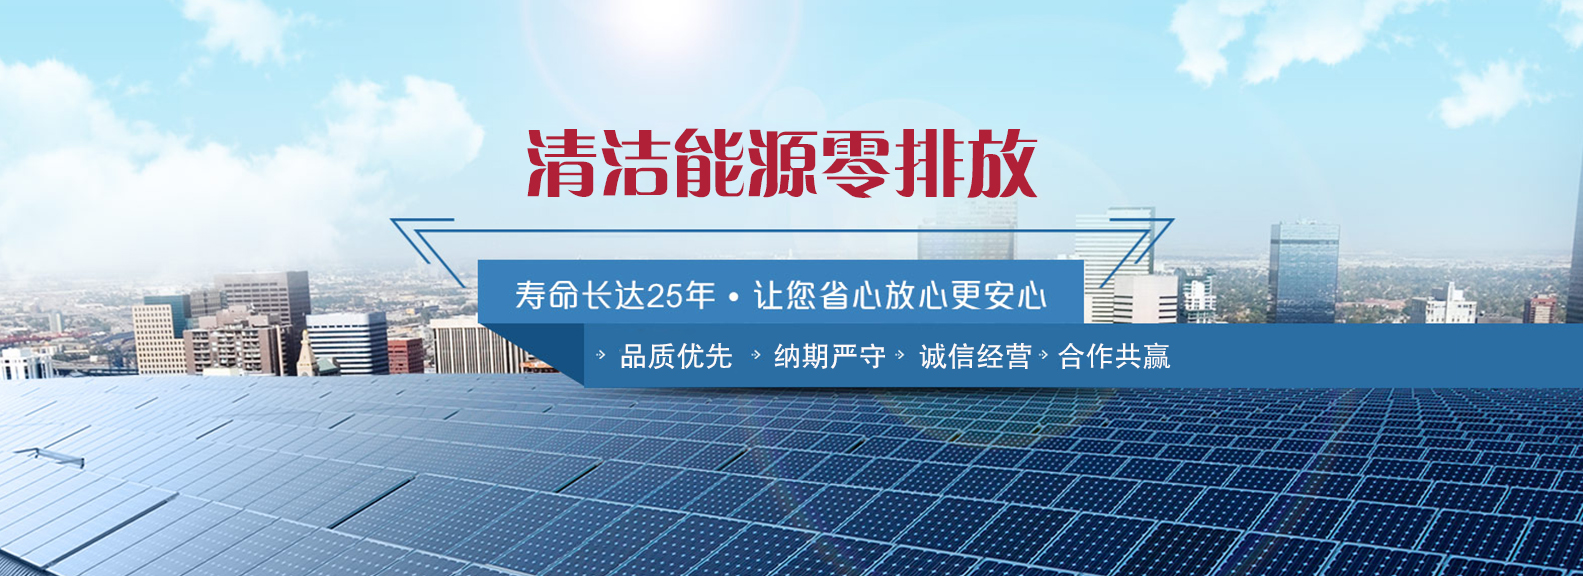 陕西宇晖新能源科技有限公司邀您加入